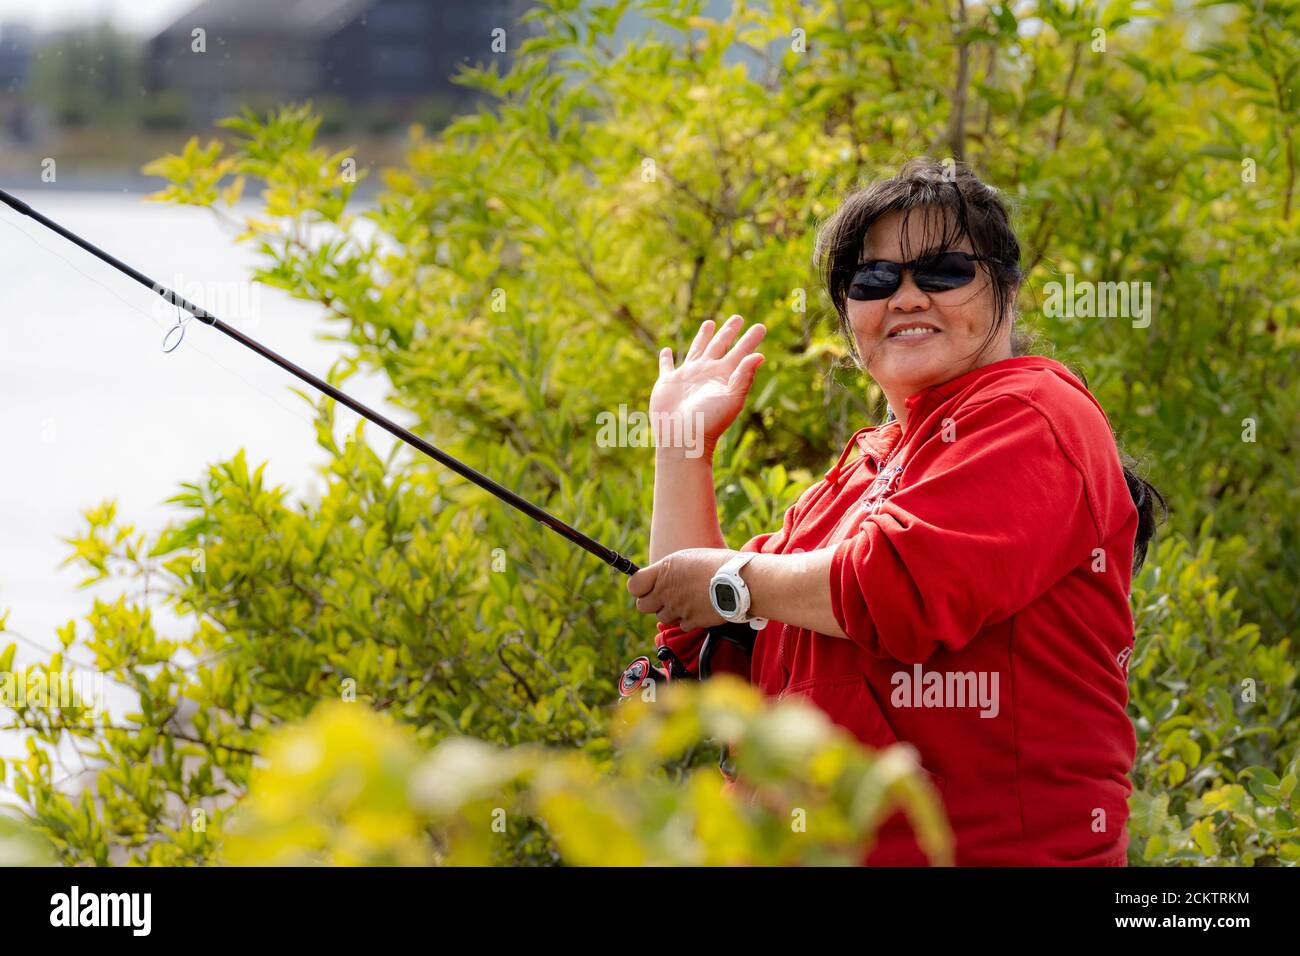 Eine lächelnde asiatische Frau mittleren Alters, in ihren 50ern, hält eine Angelrute und macht ein V-Zeichen. Grüne Büsche im Hintergrund Stockfoto